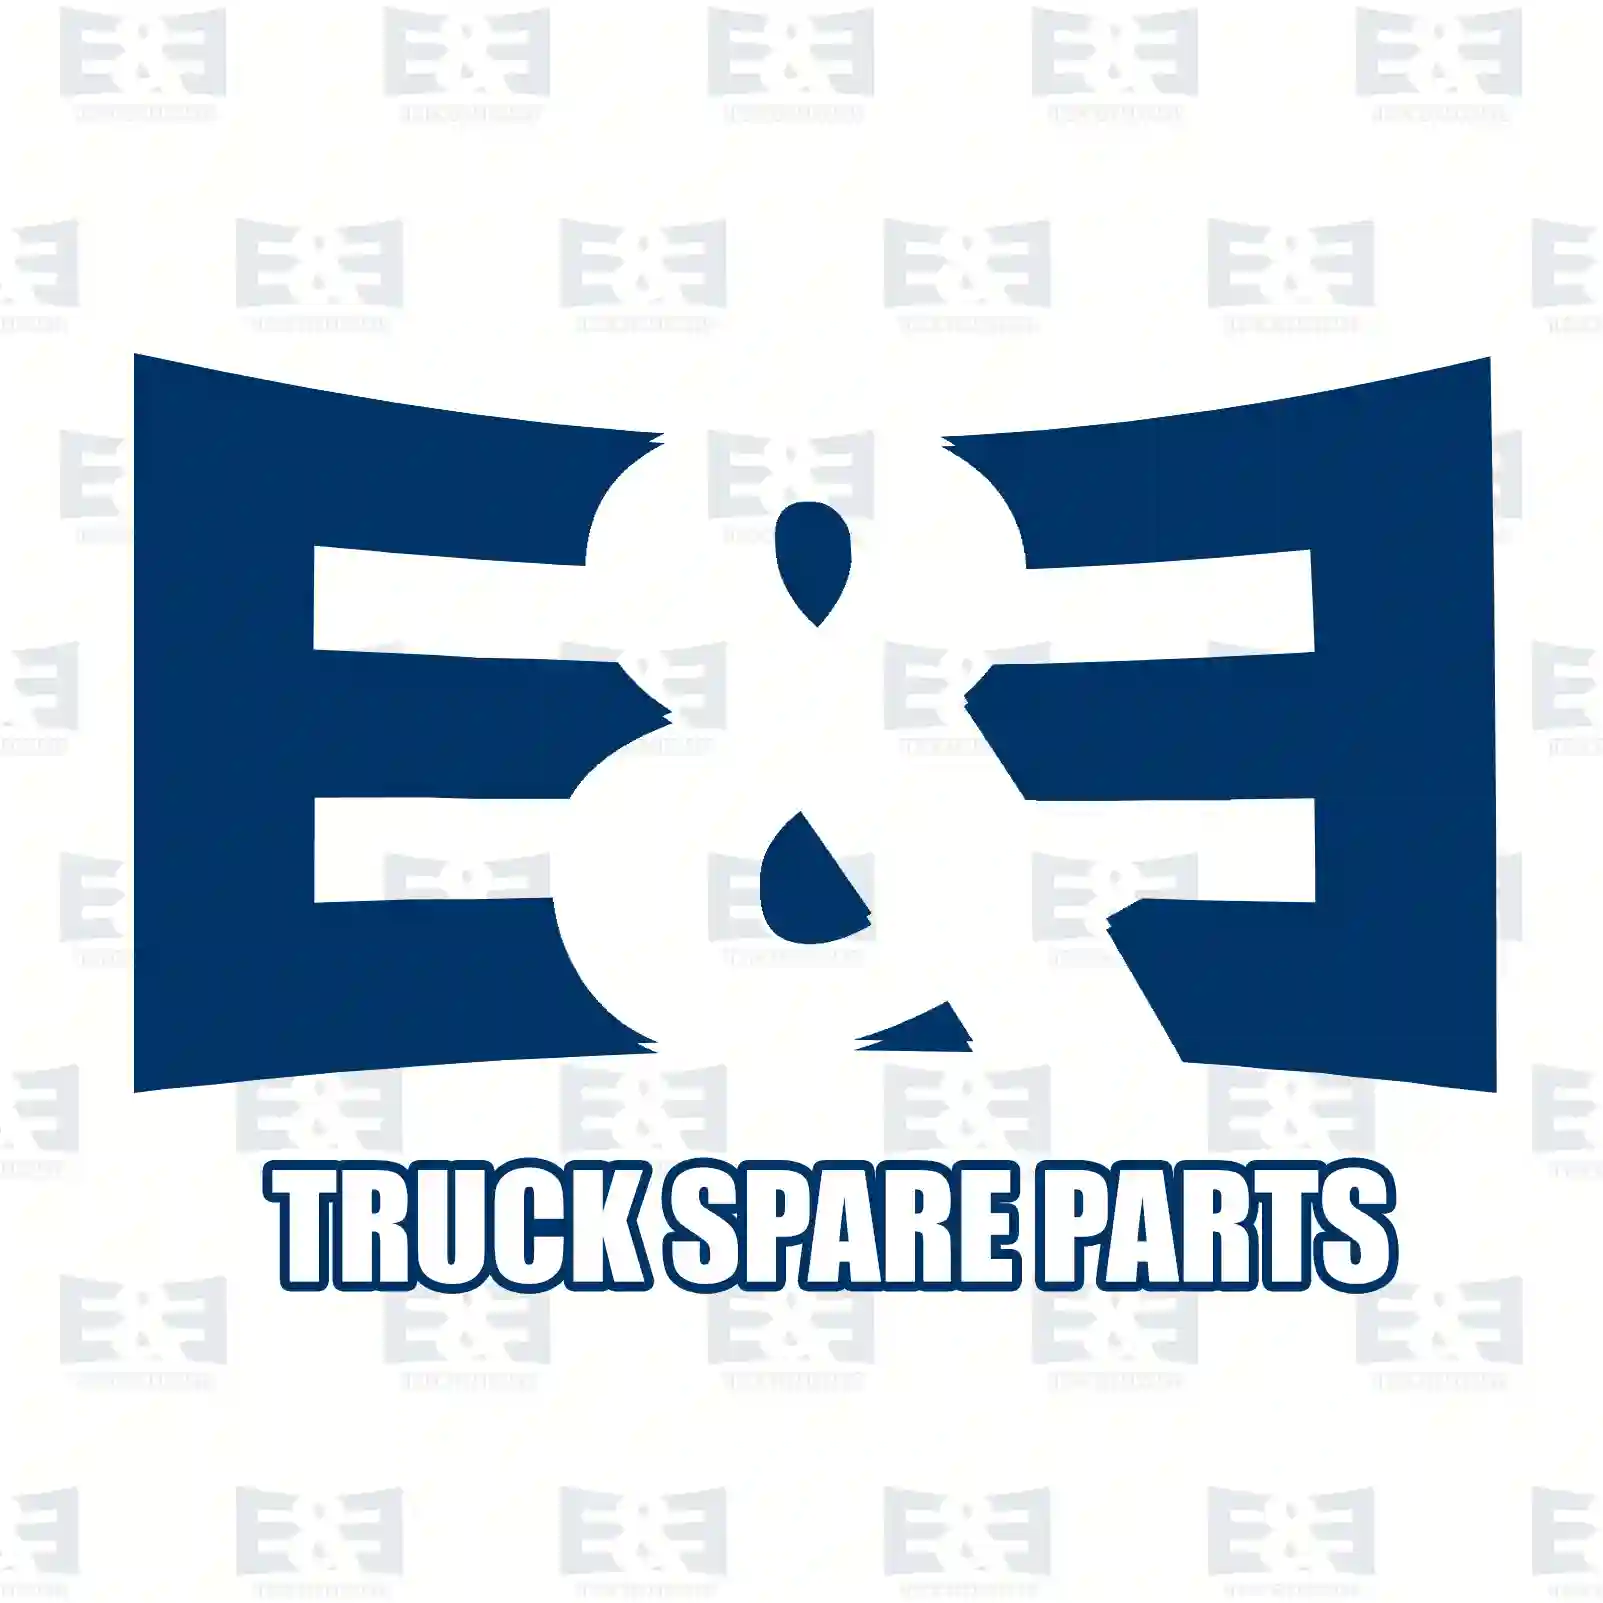 Brake cylinder, 2E2293956, 98474561, , , ||  2E2293956 E&E Truck Spare Parts | Truck Spare Parts, Auotomotive Spare Parts Brake cylinder, 2E2293956, 98474561, , , ||  2E2293956 E&E Truck Spare Parts | Truck Spare Parts, Auotomotive Spare Parts